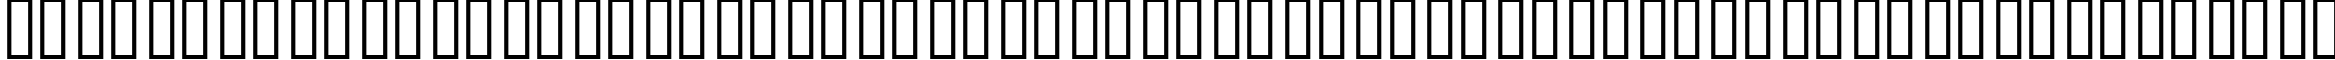 Пример написания русского алфавита шрифтом SKYfontbrands